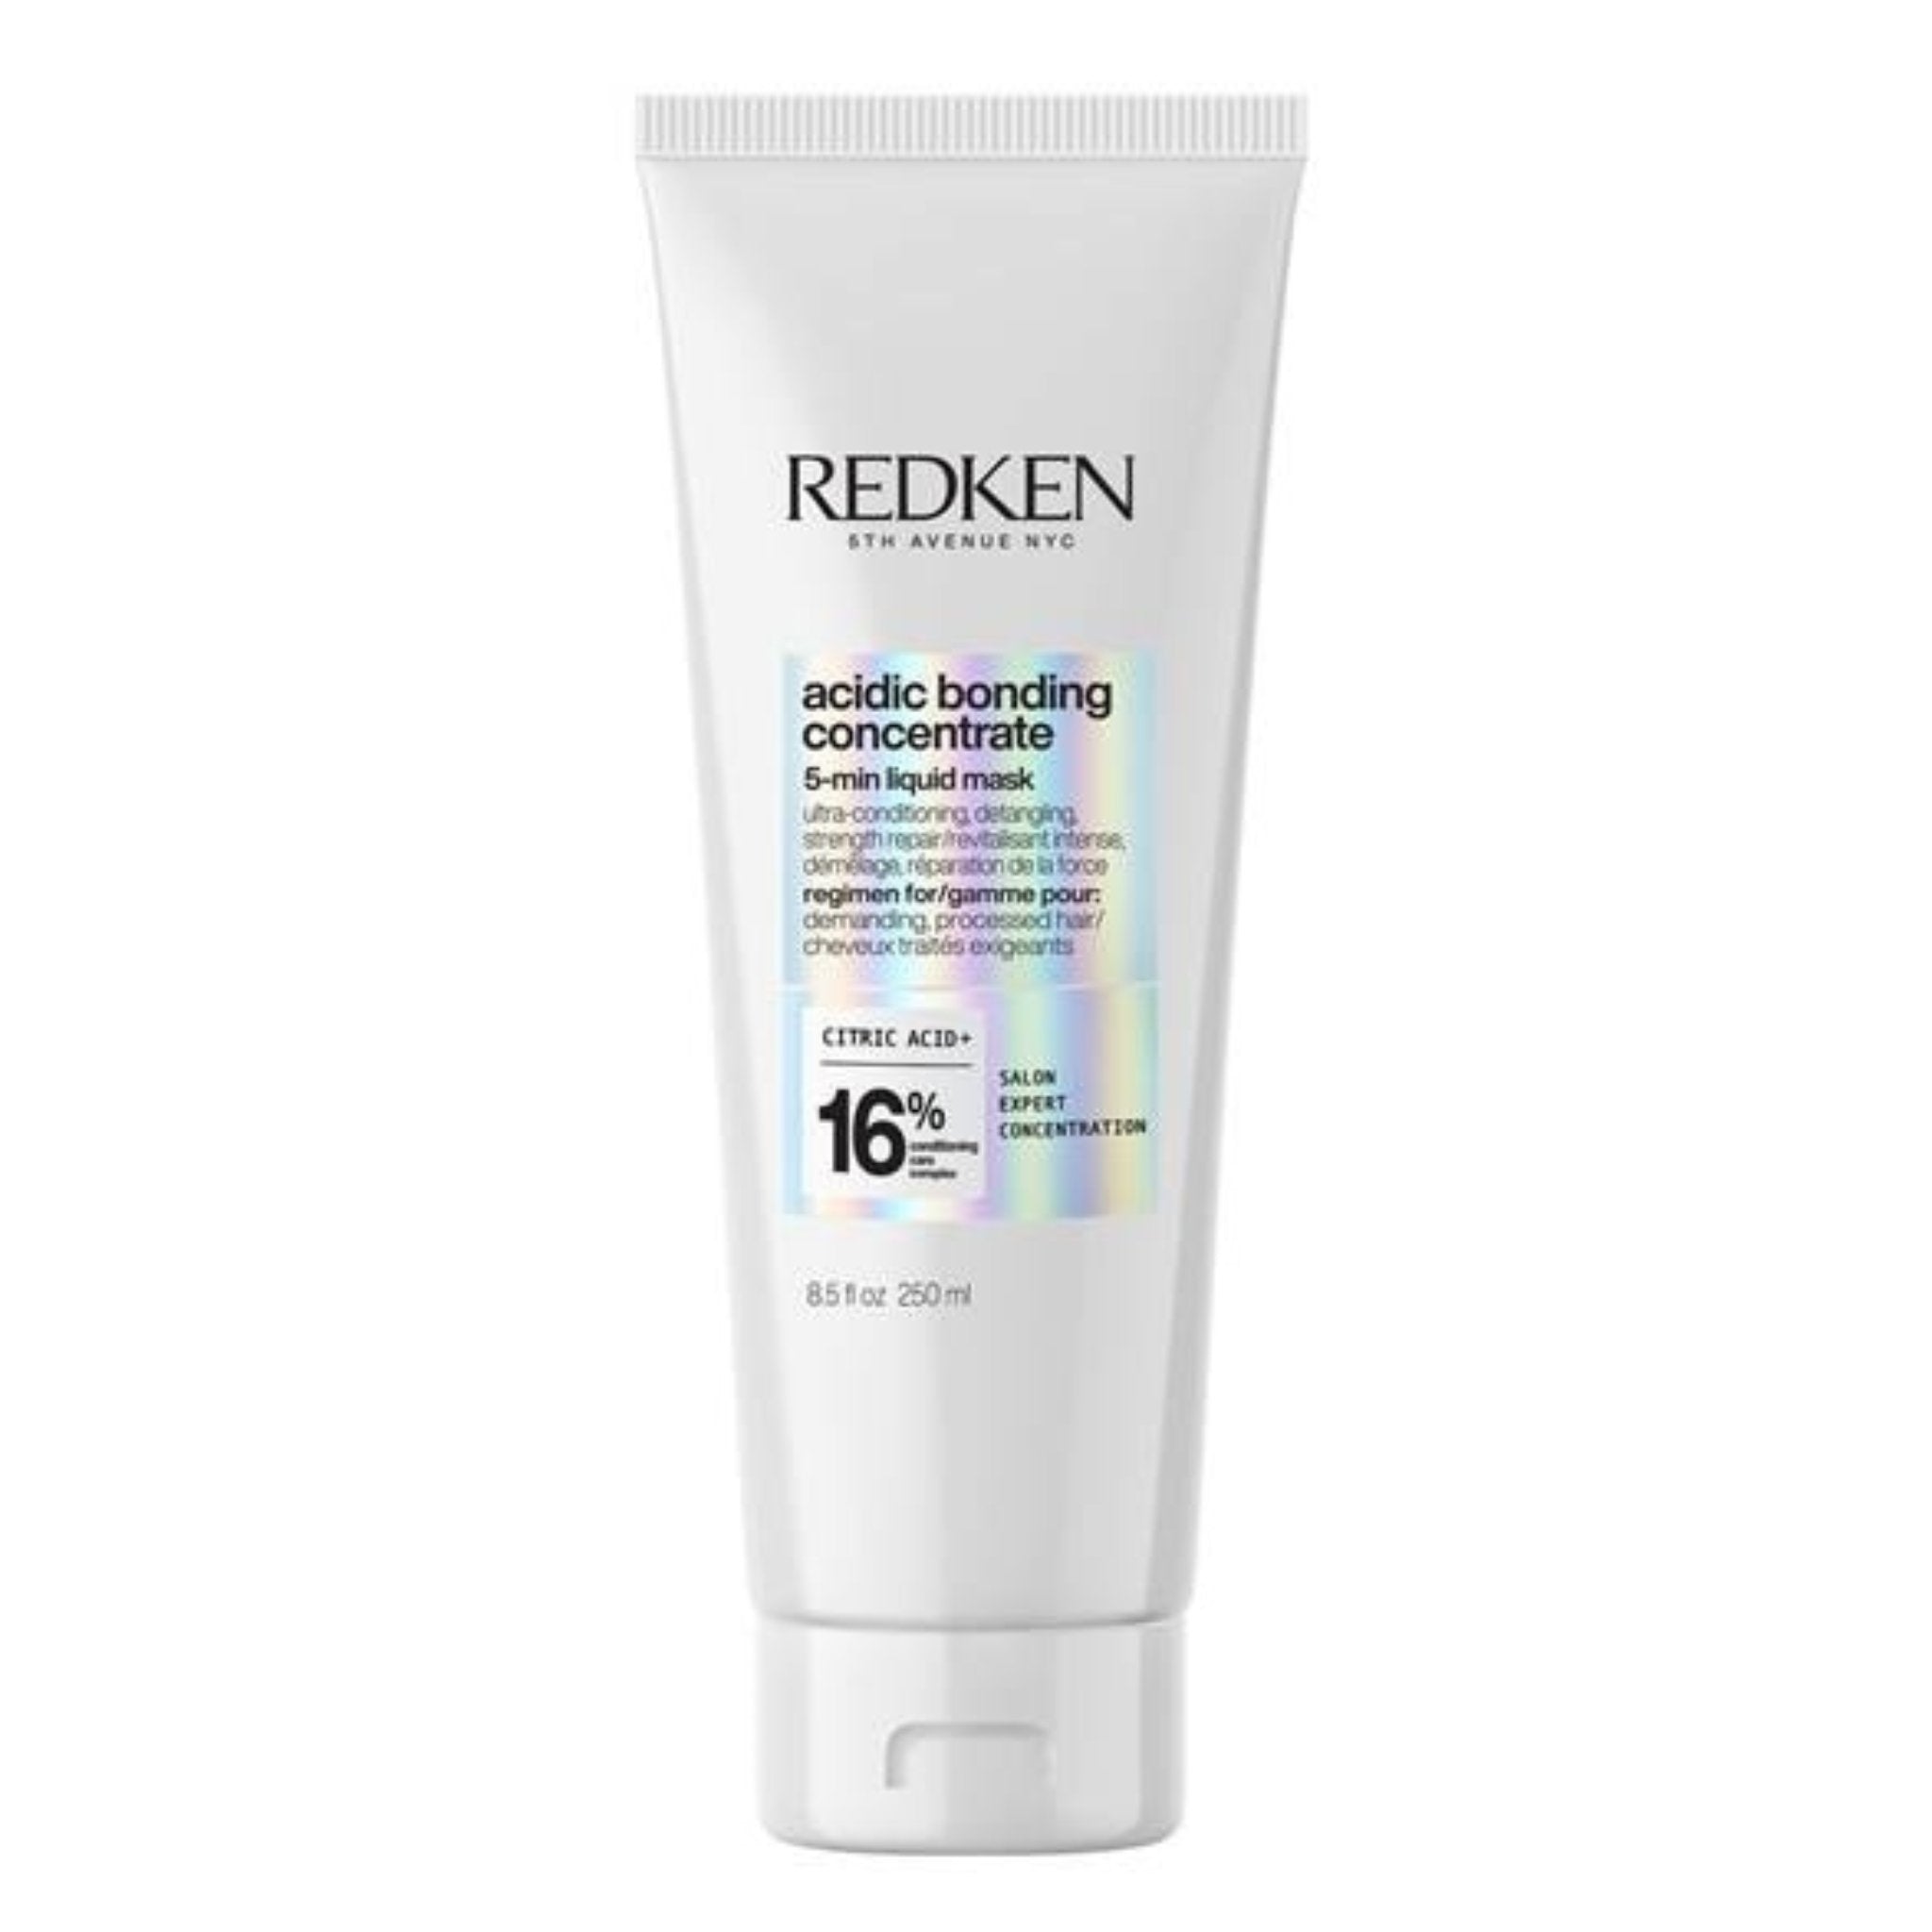 Redken. Masque 5 minutes ABC - 250 ml - Concept C. Shop